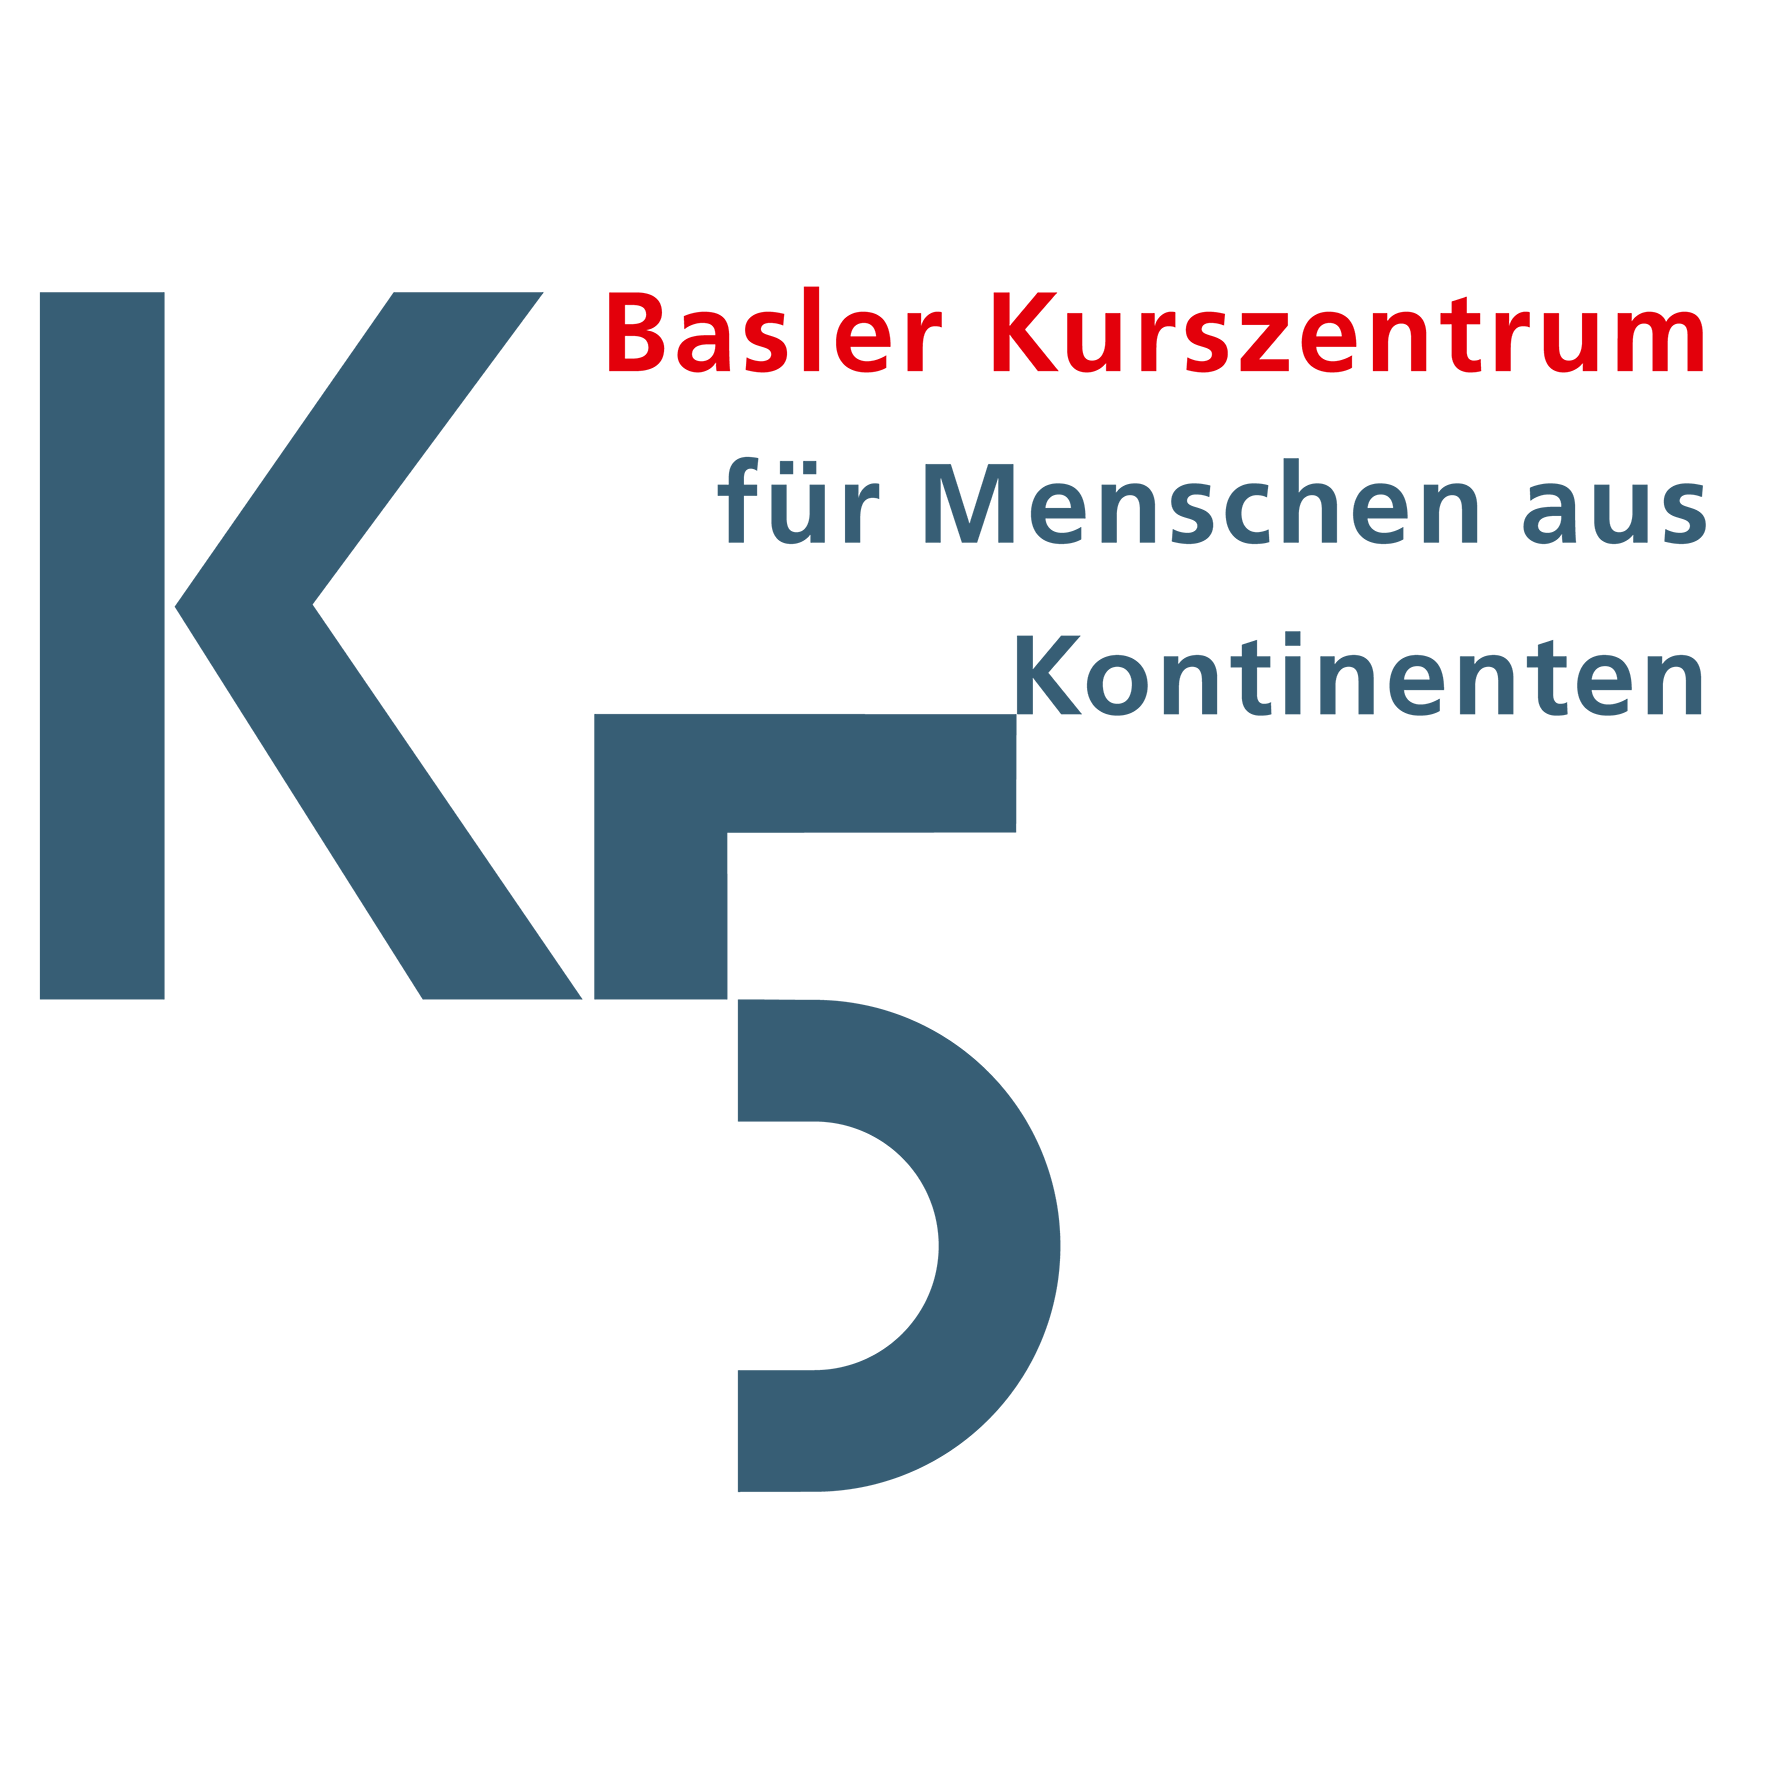 K5 Basler Kurszentrum